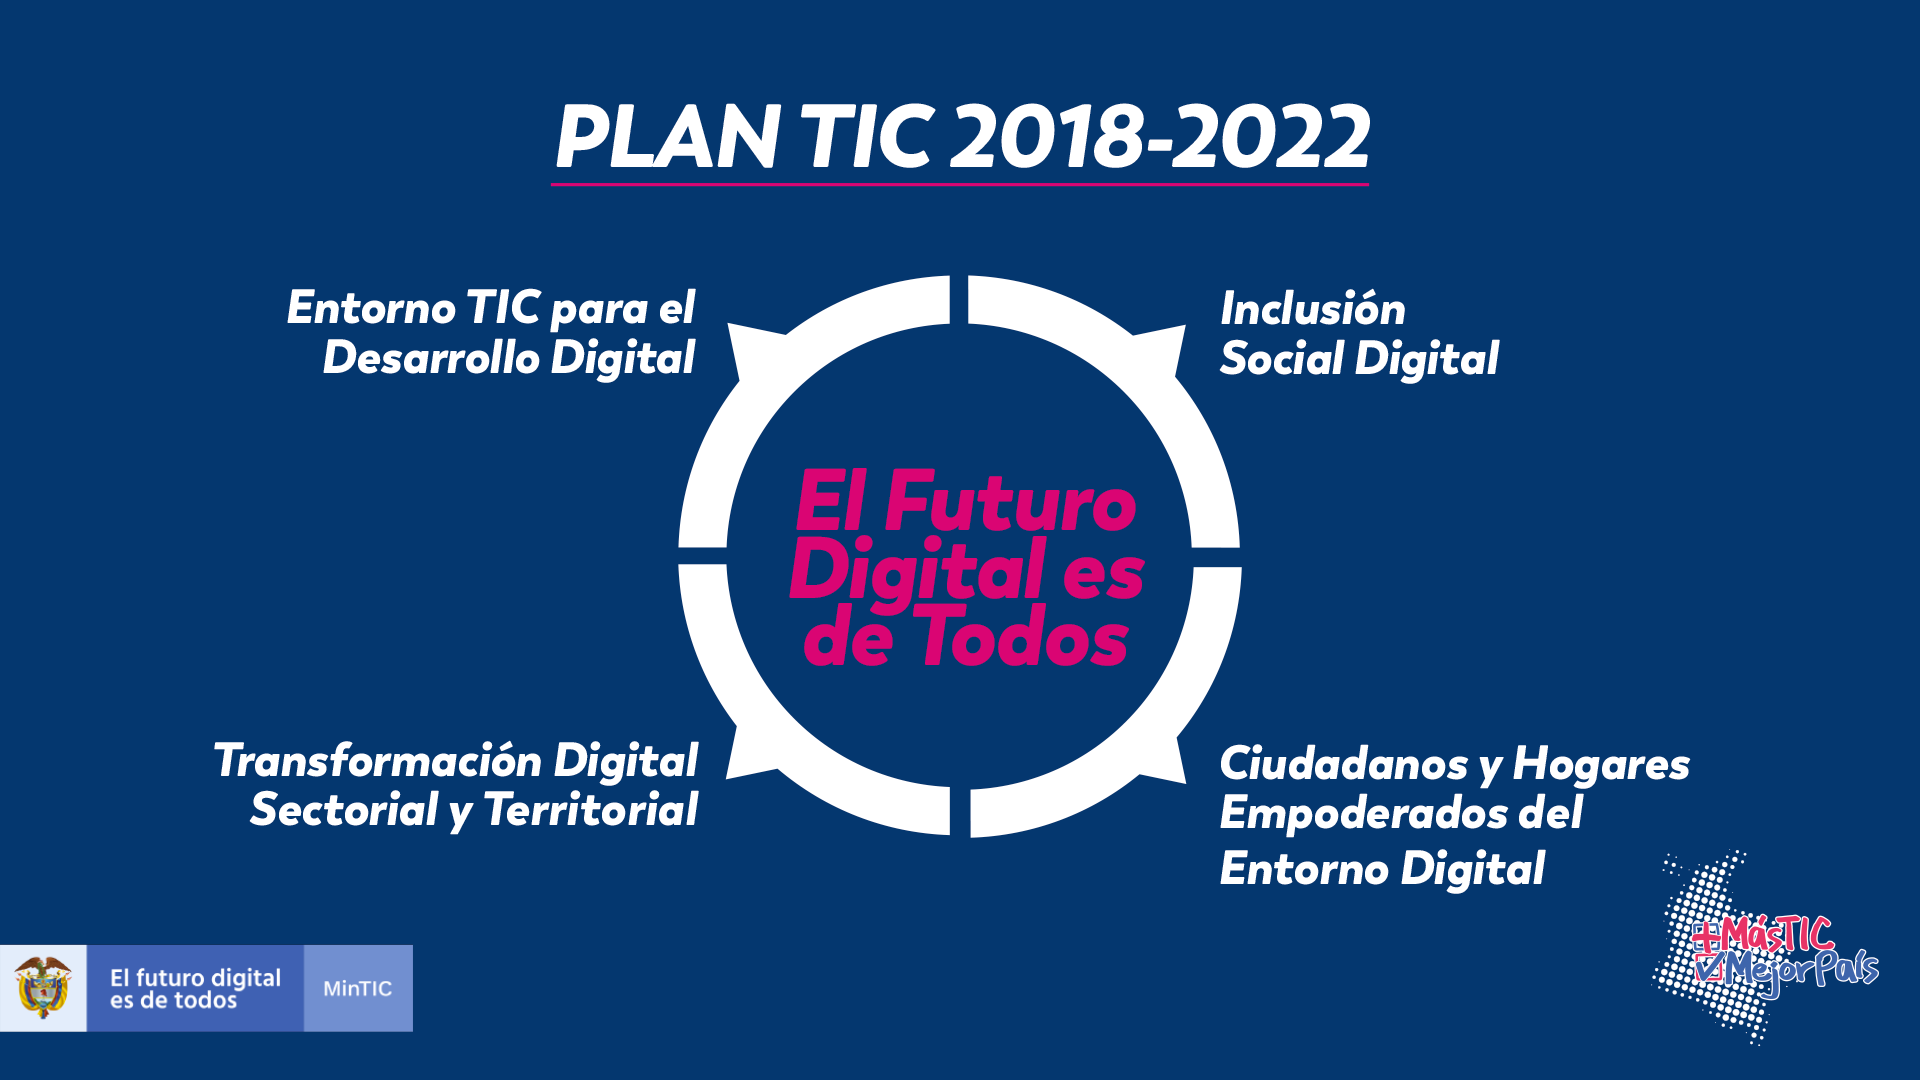 Plan TIC 2018-2022: El Futuro Digital es de Todos